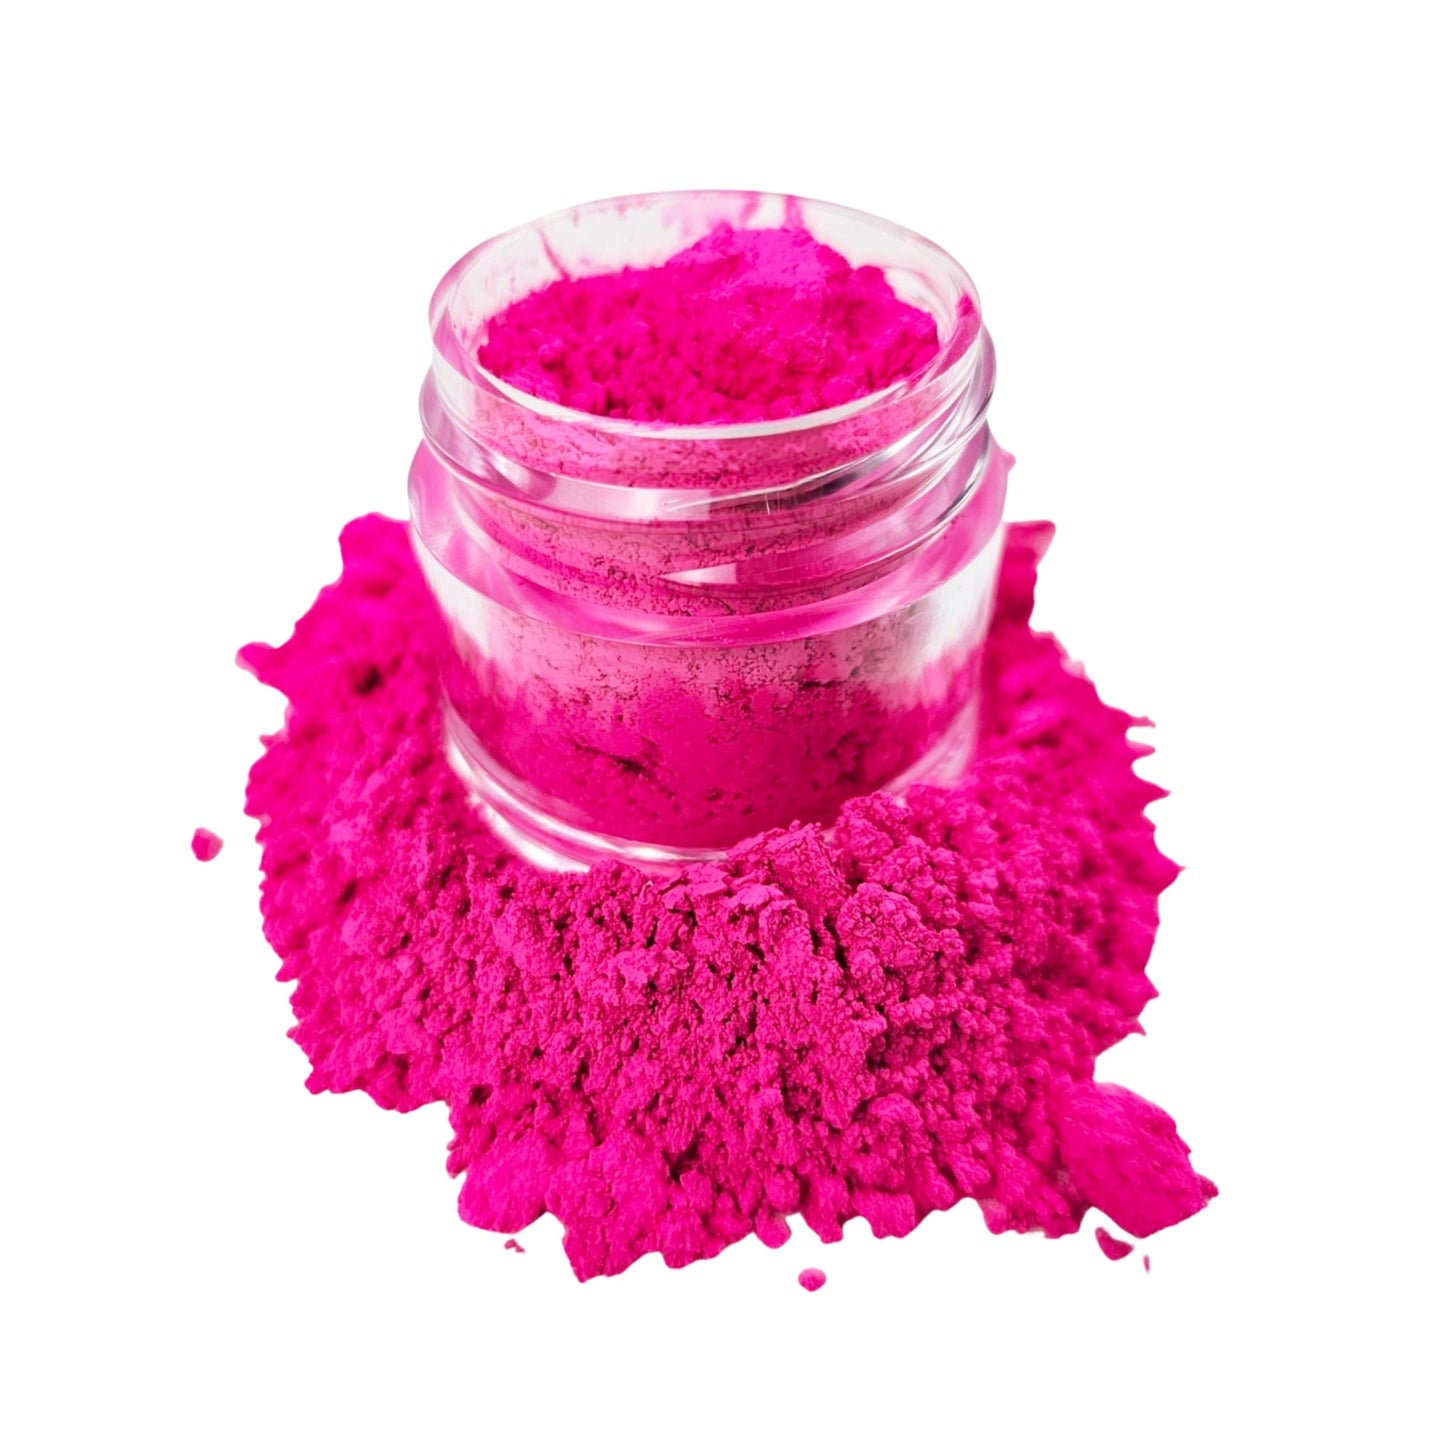 Fruit Parfait Neon Pink Perfect Pigments Powder